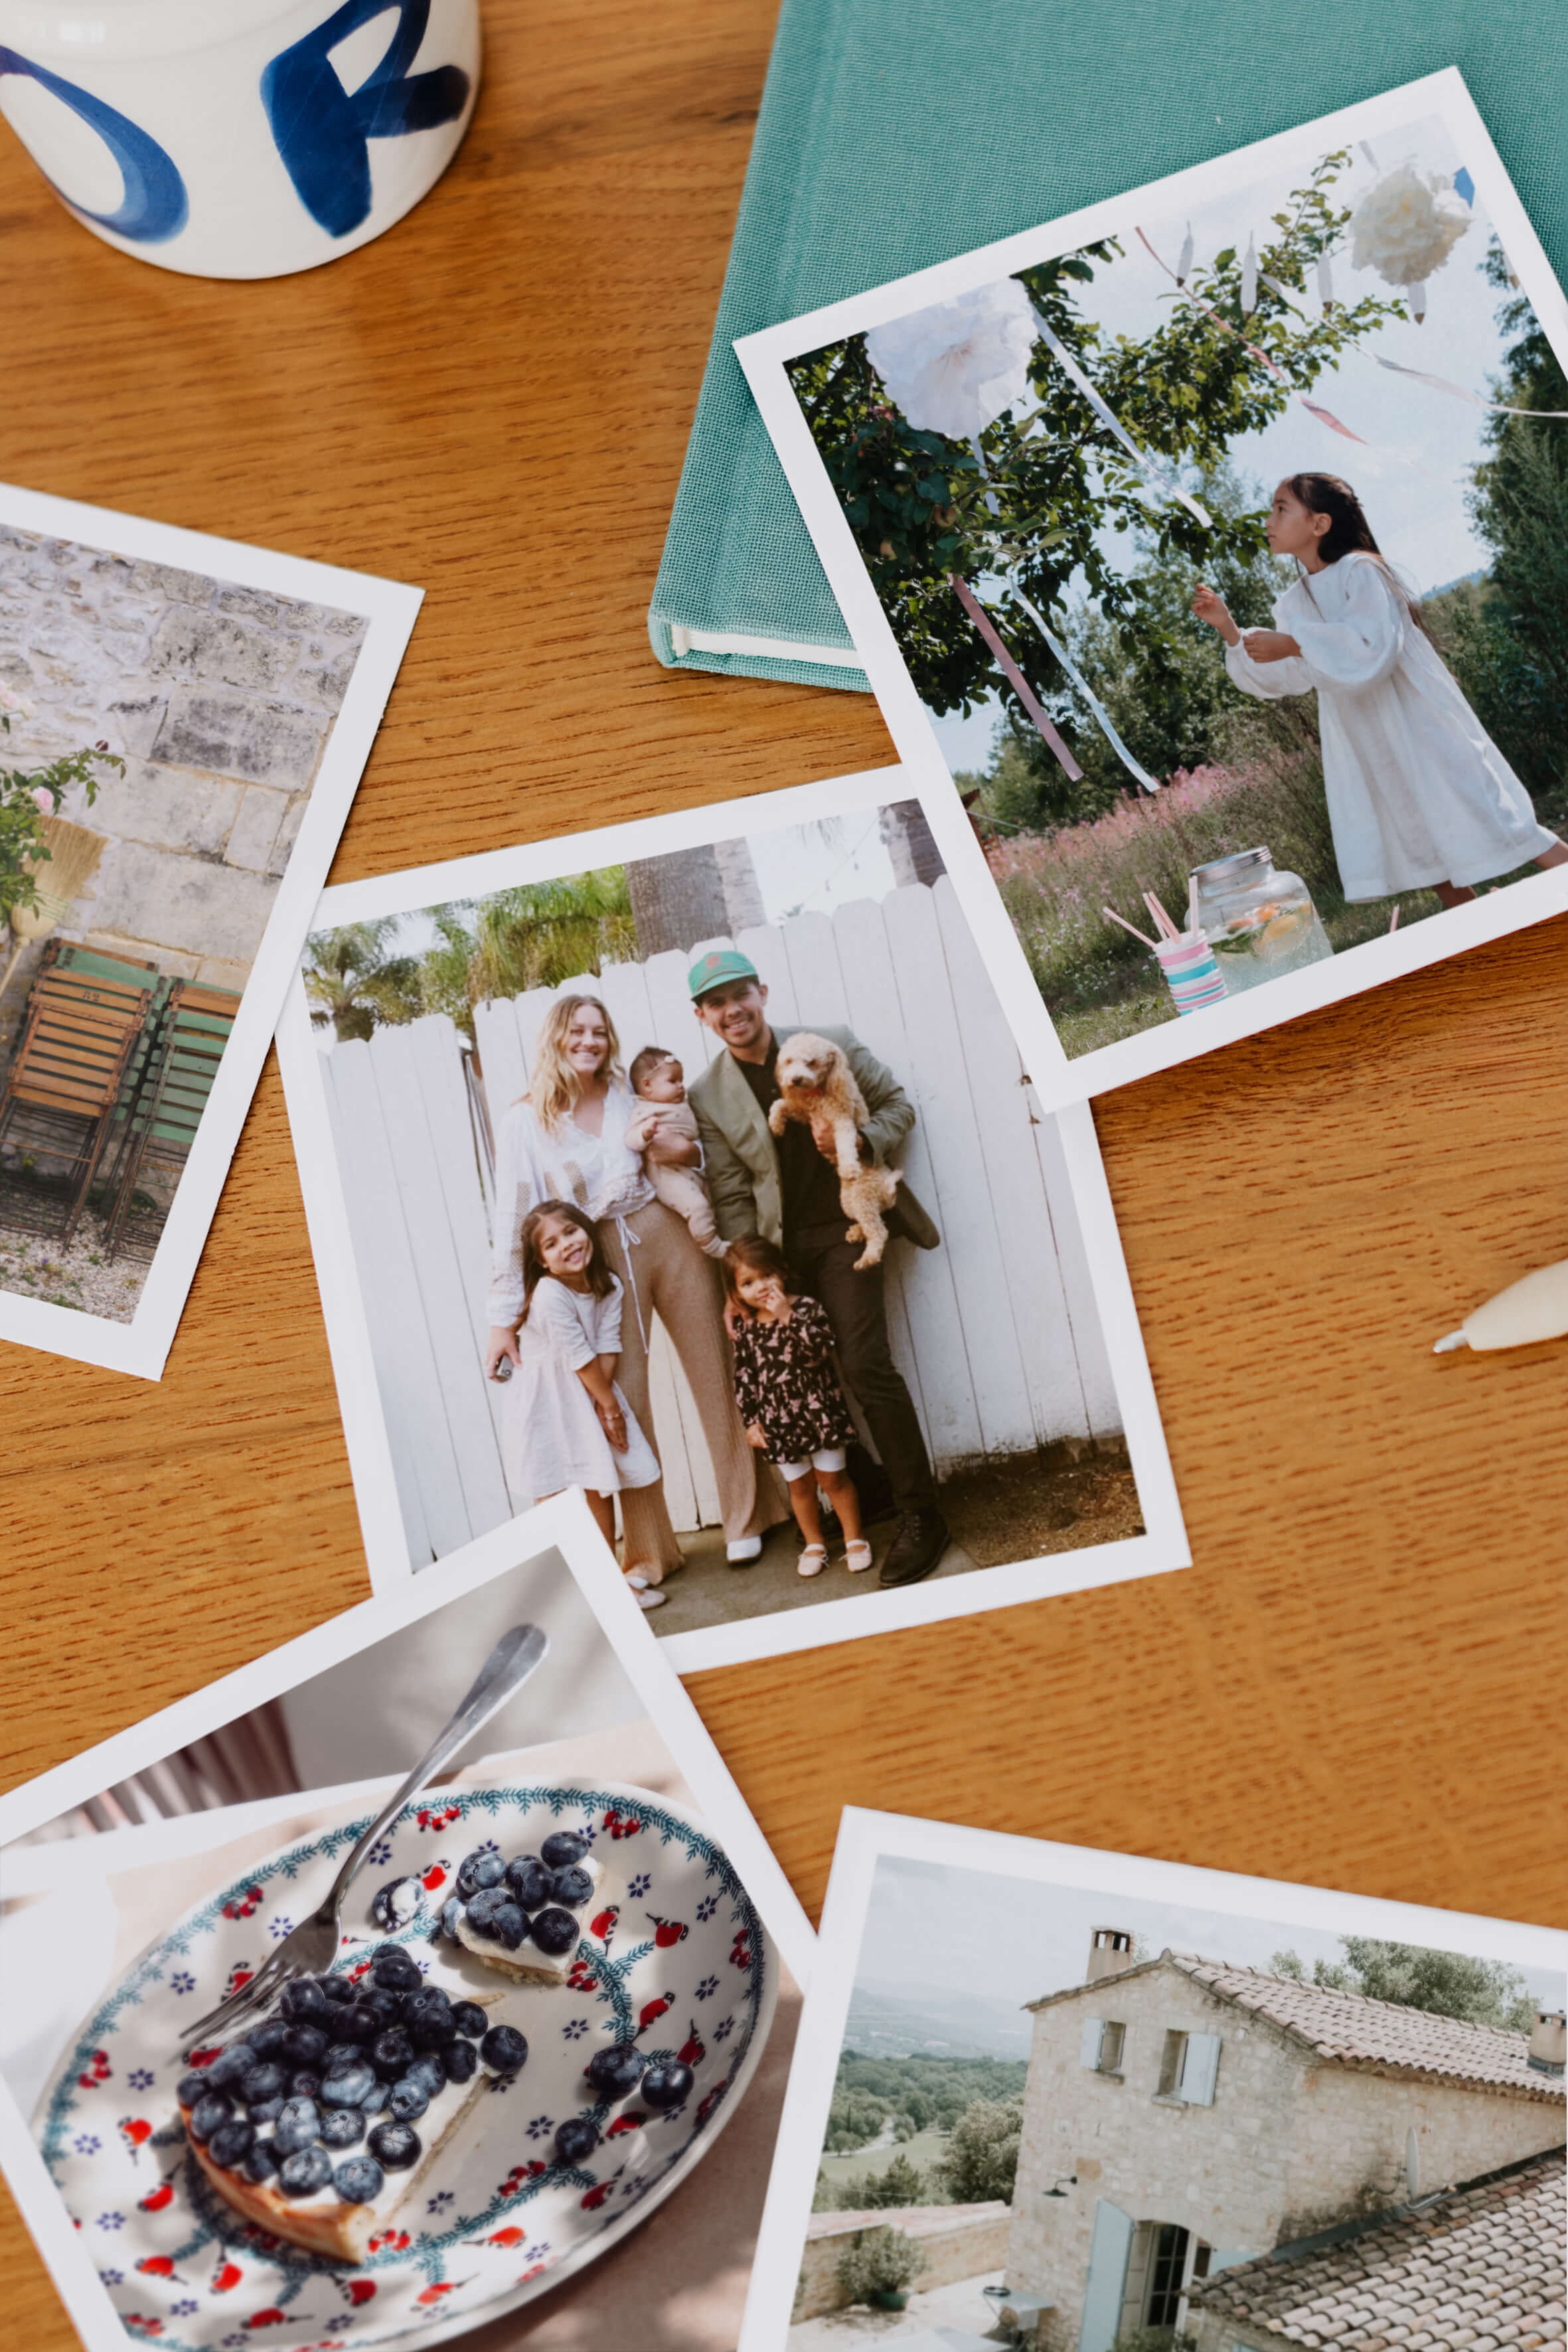 Plusieurs tirages photo polaroid posés sur une table en bois. On aperçoit une famille, une petite fille, une tarte aux myrtilles, une maison de campagne en pierres.